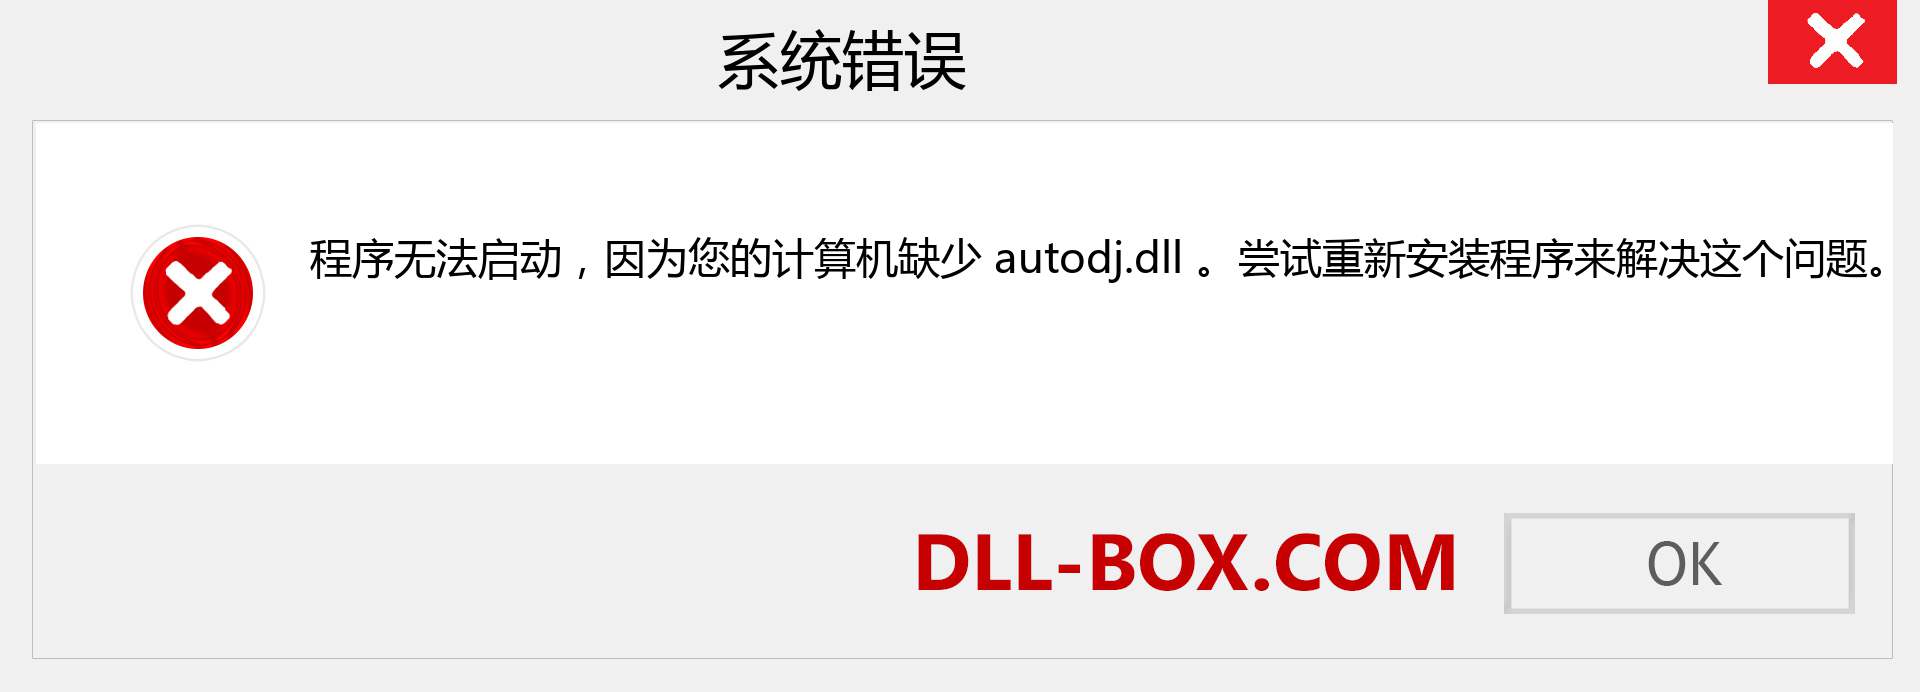 autodj.dll 文件丢失？。 适用于 Windows 7、8、10 的下载 - 修复 Windows、照片、图像上的 autodj dll 丢失错误